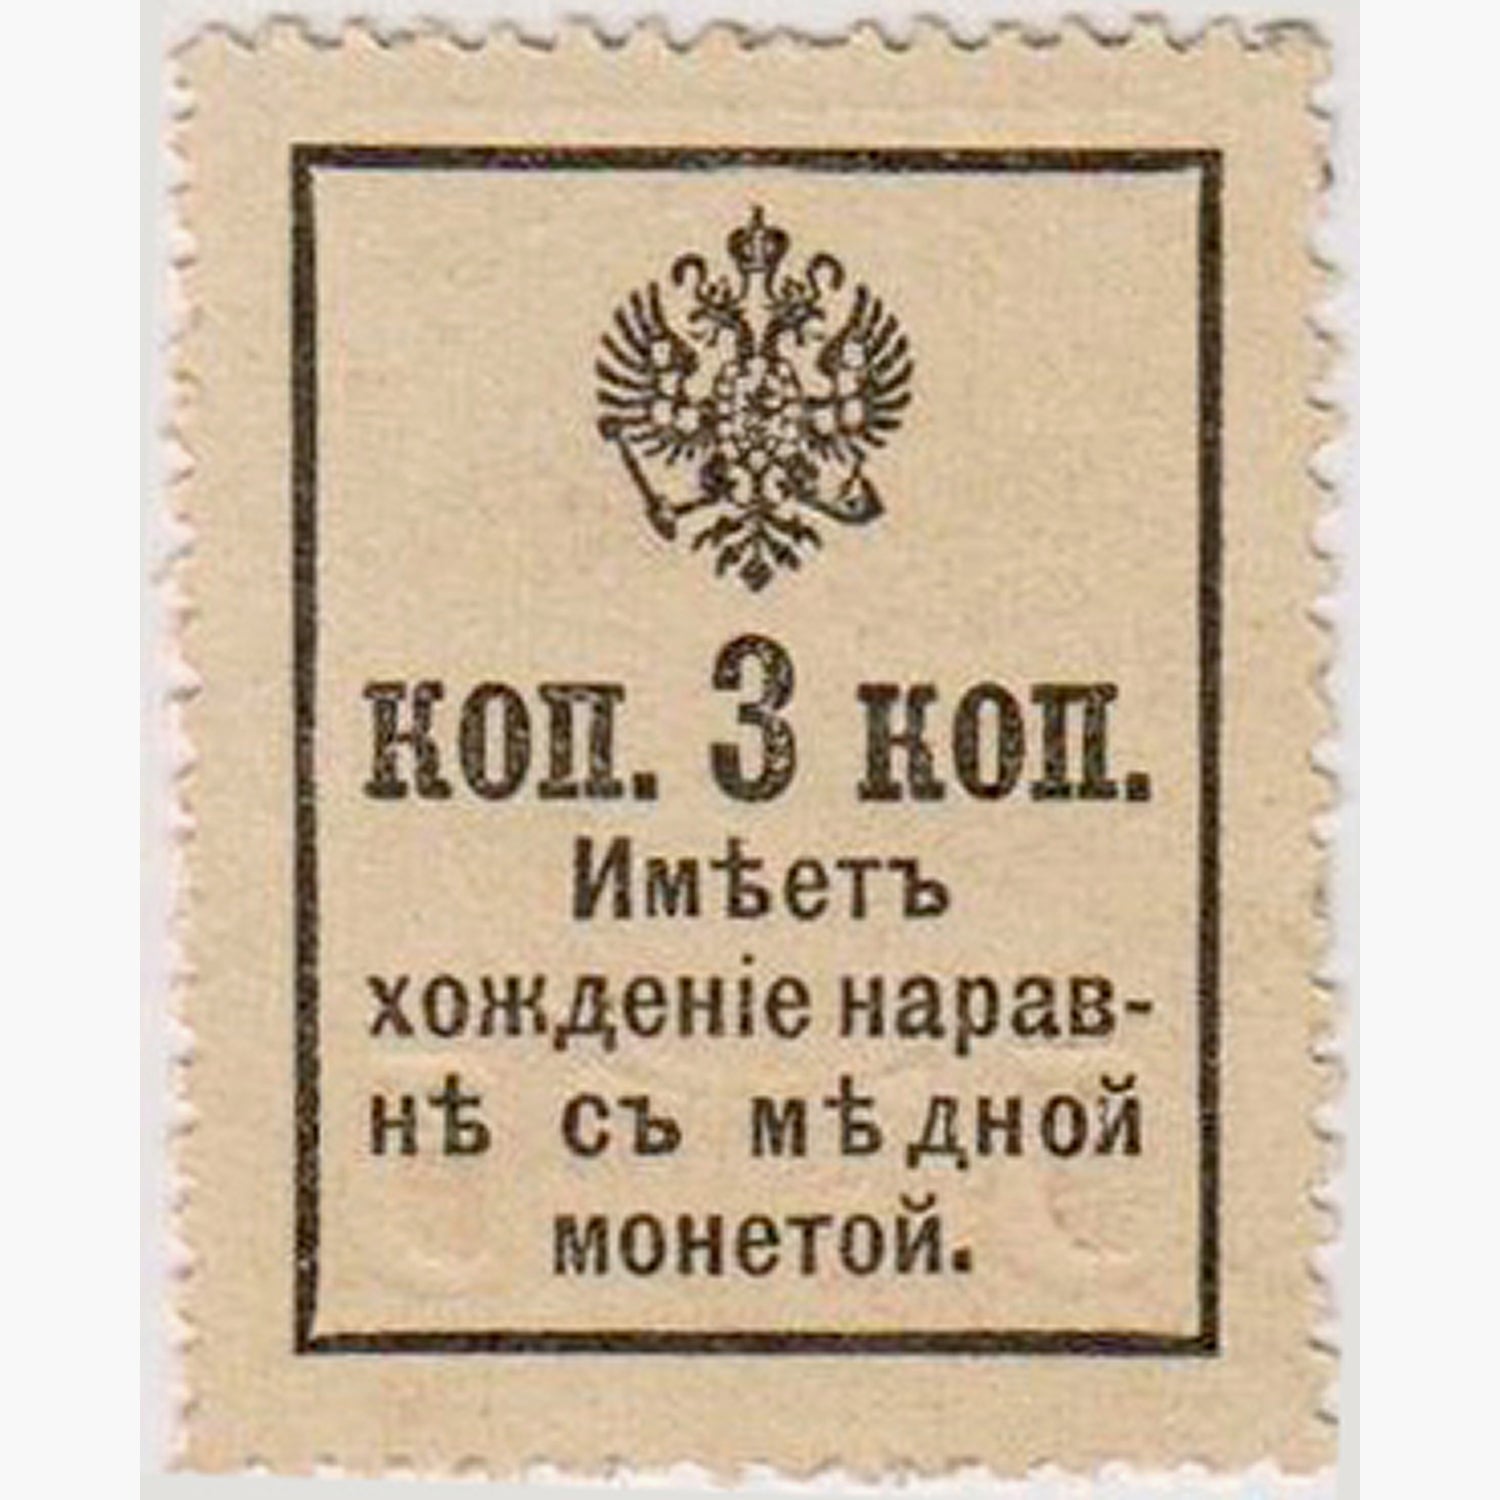 Monnaie du timbre